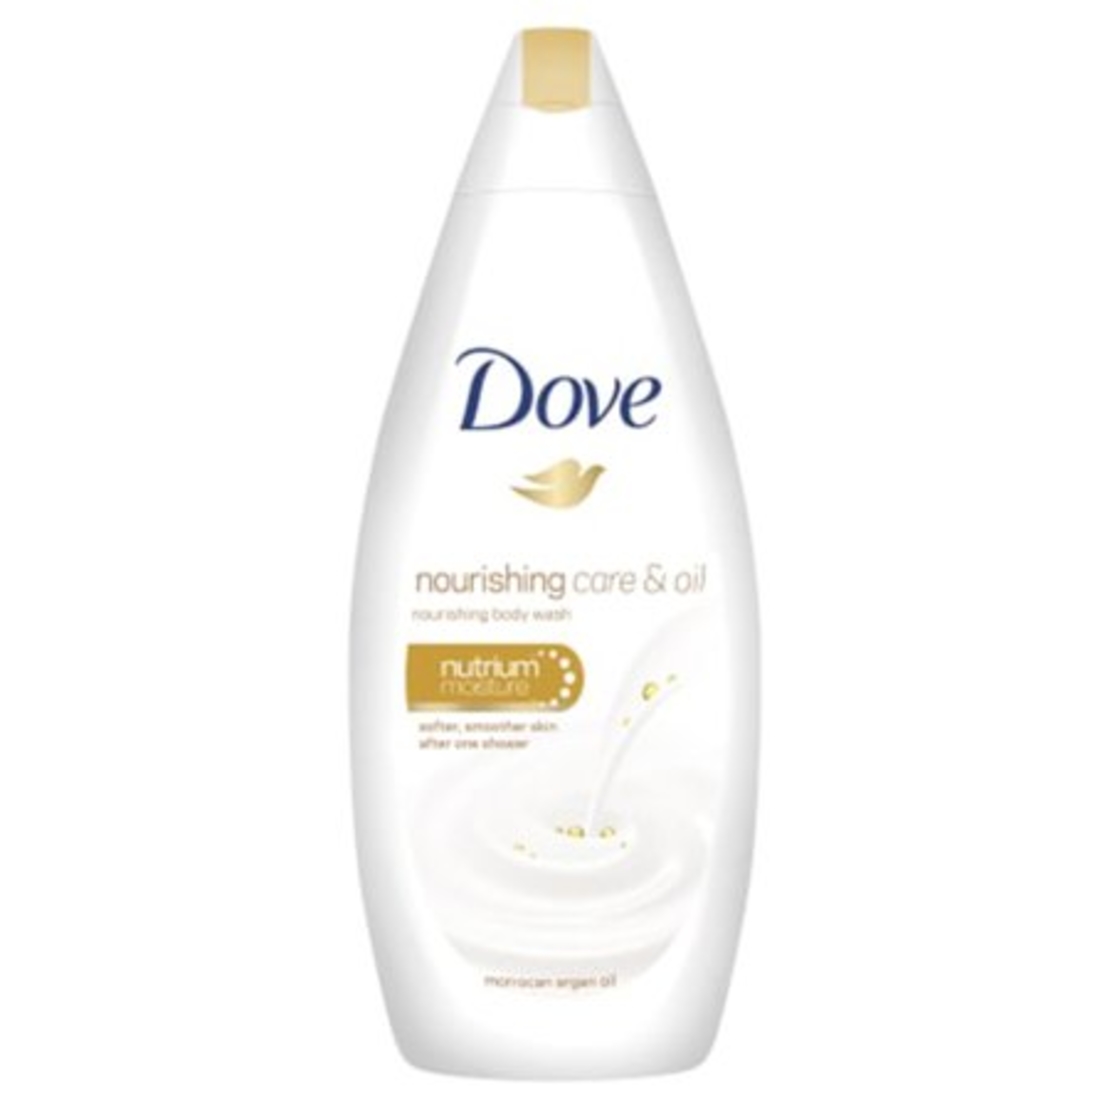 Dove - Nourishing Care & oil Body Wash 750ml 